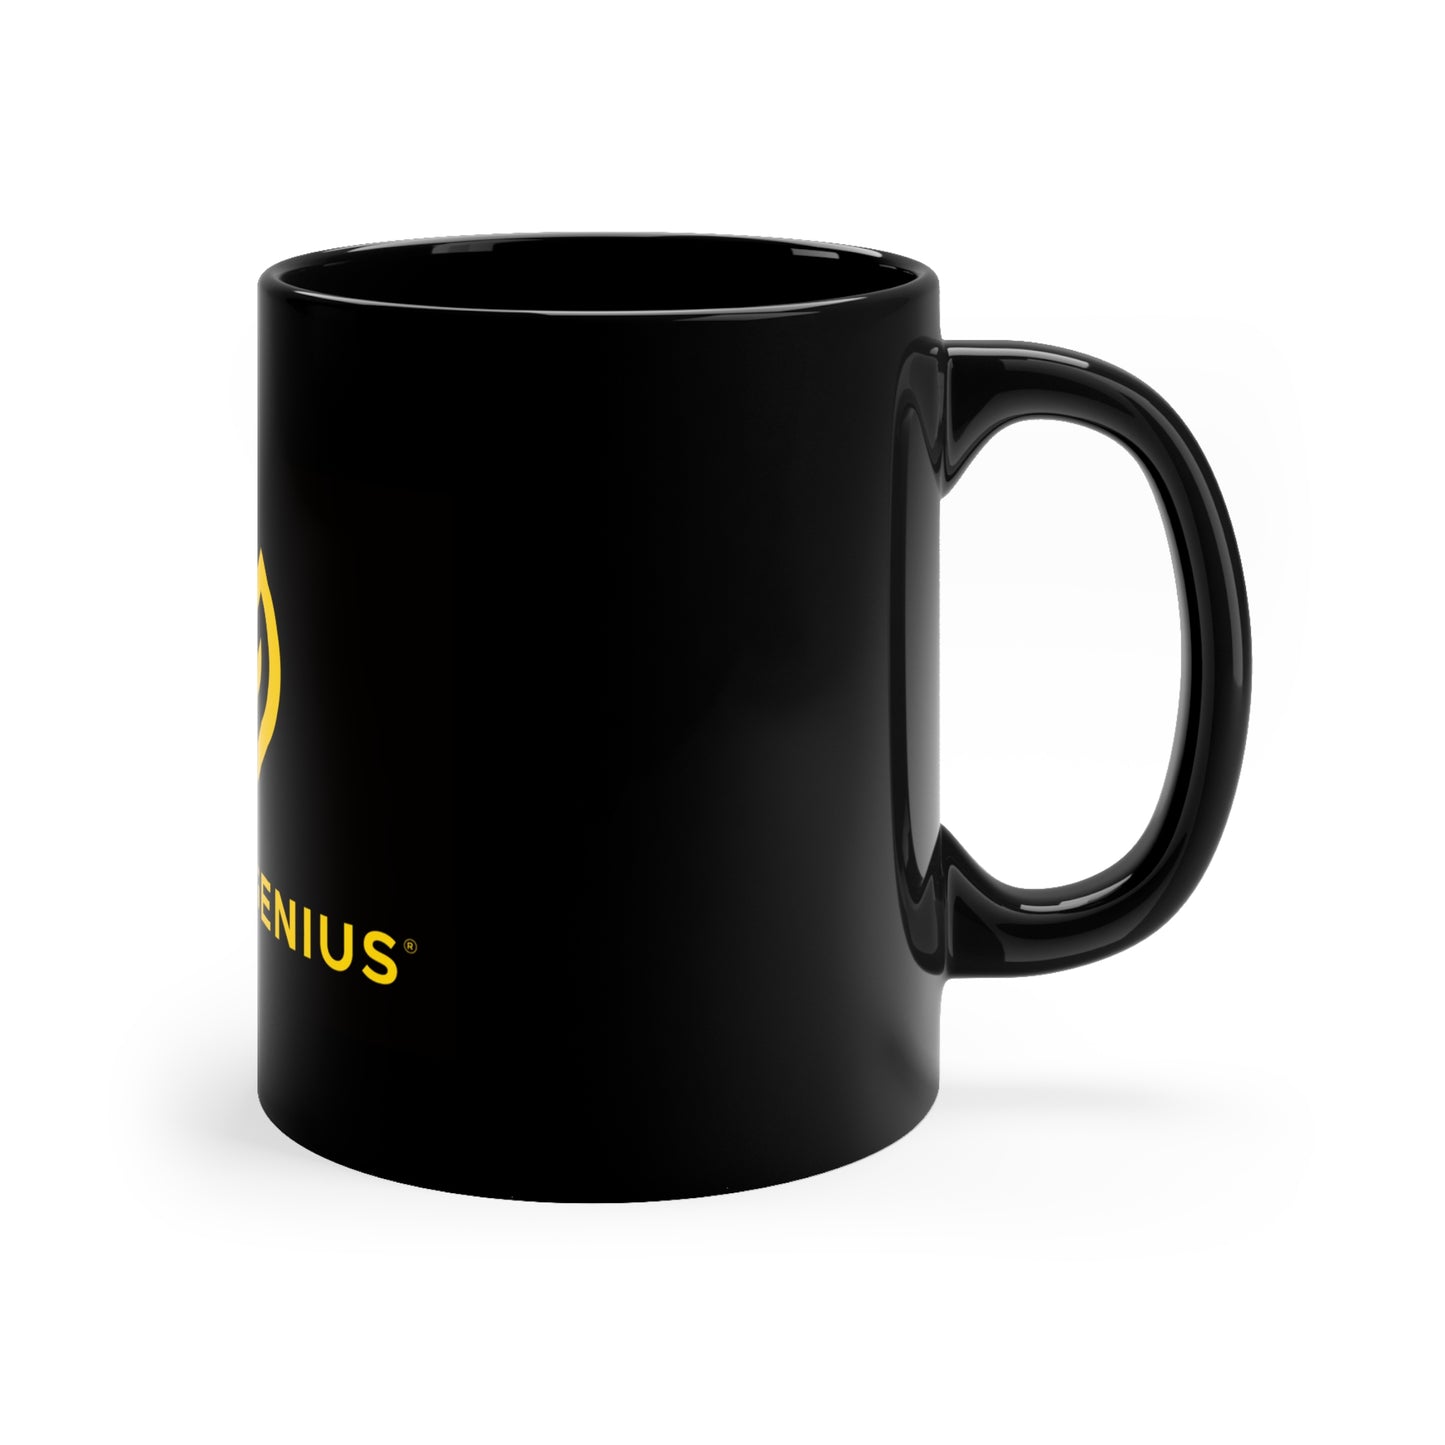 SuperGenius 11oz Black Mug